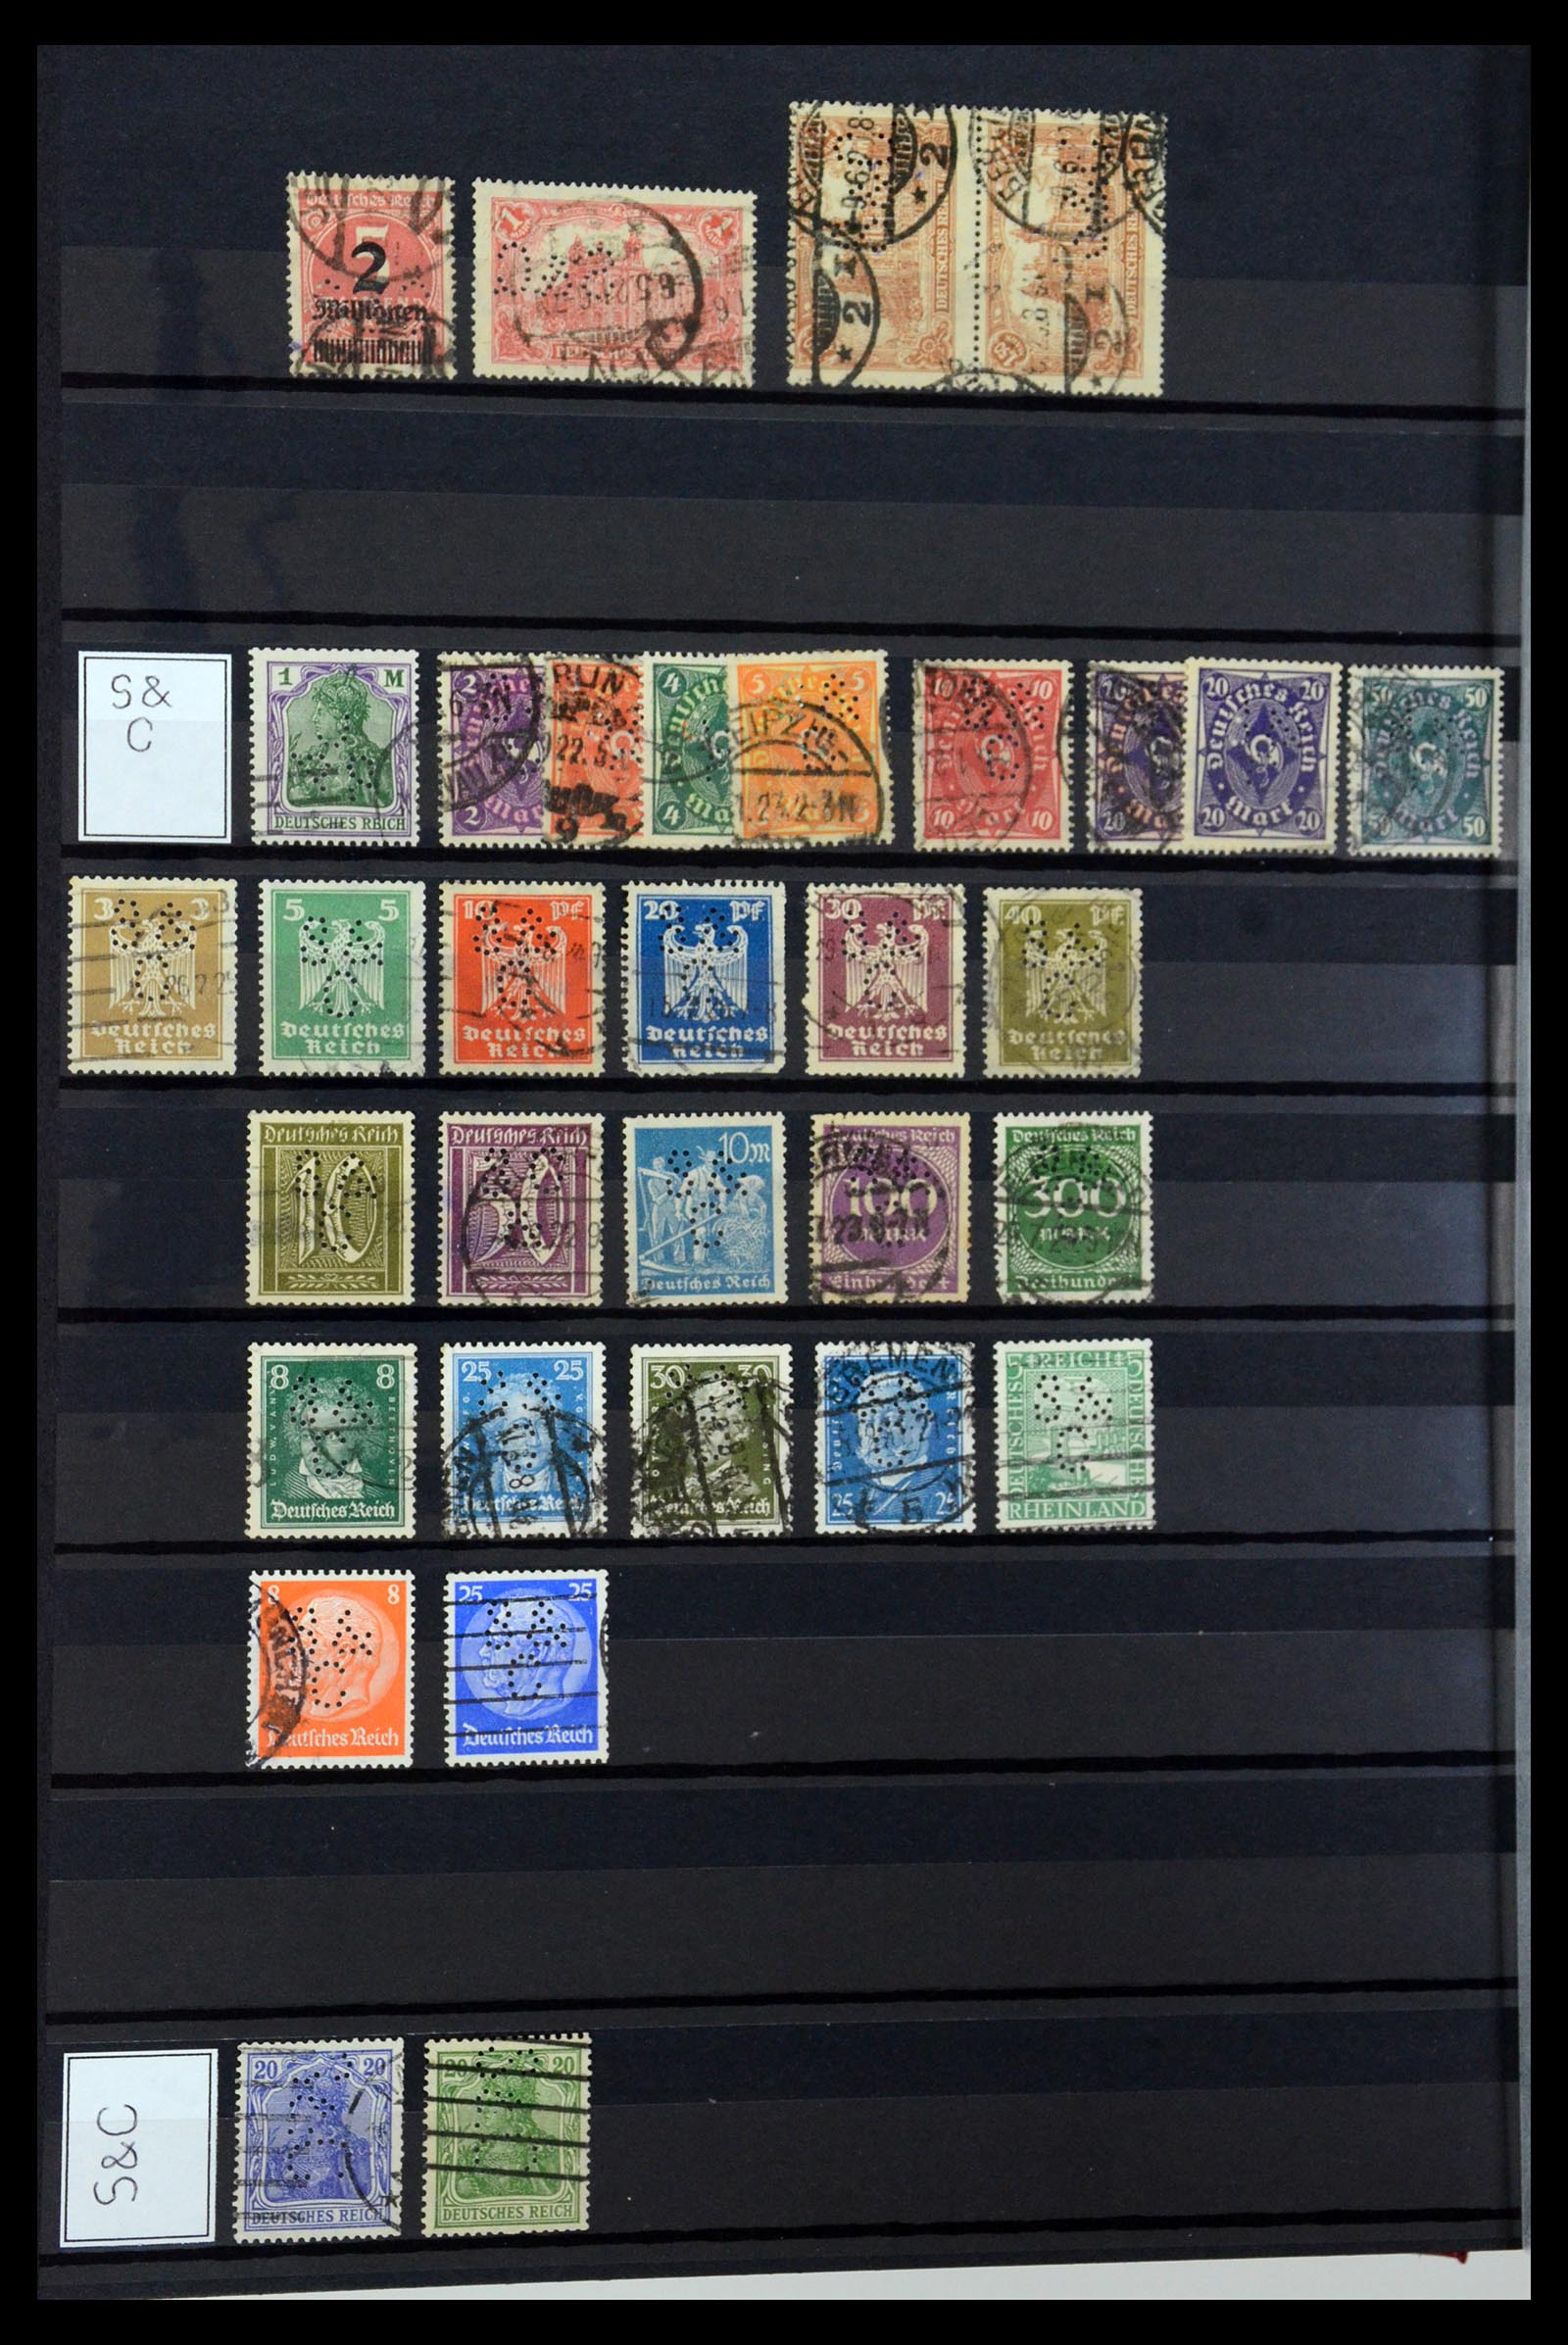 36405 305 - Stamp collection 36405 German Reich perfins 1880-1945.